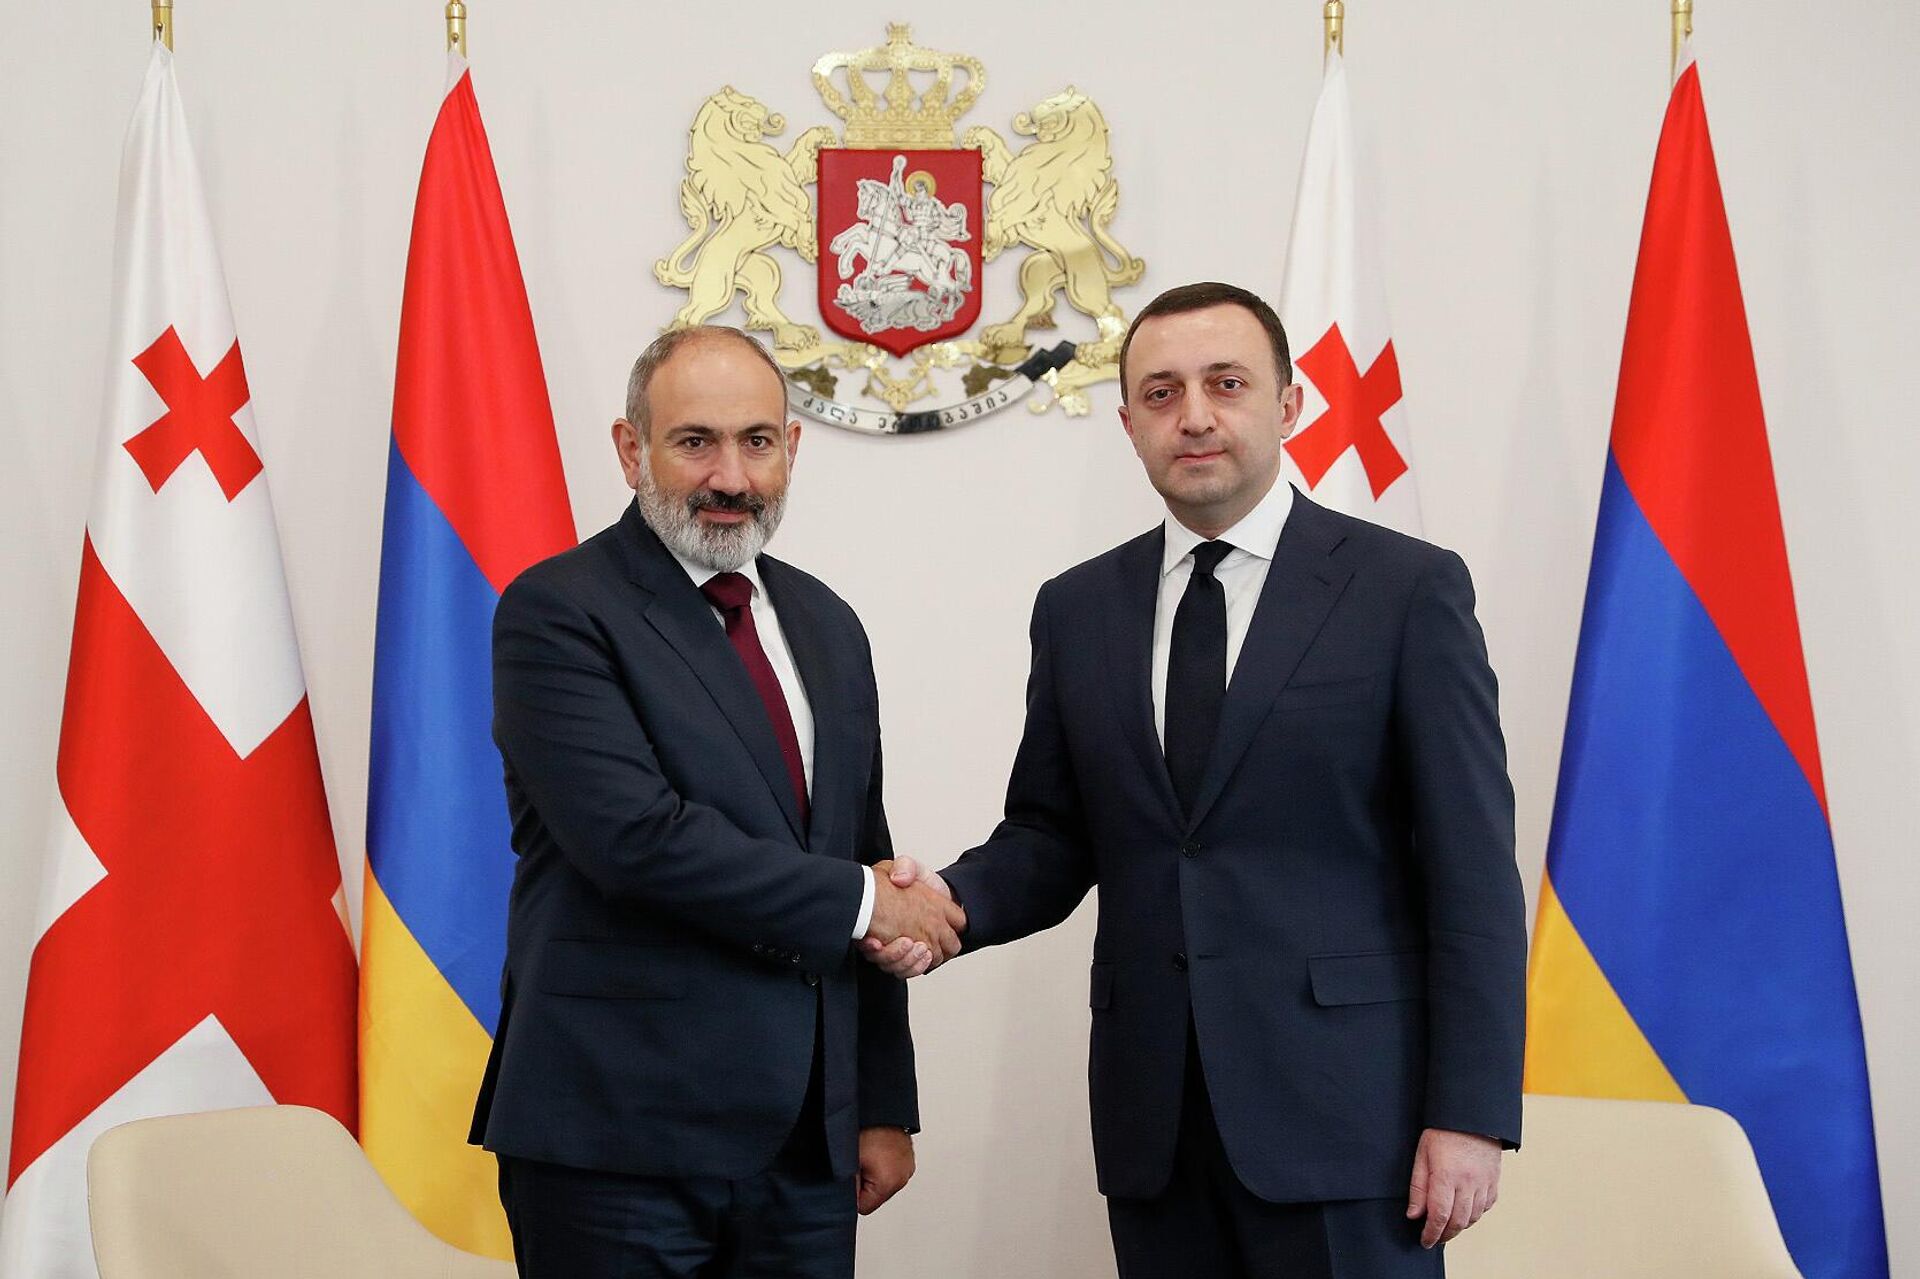 На армяно-грузинской границе состоялась приватная беседа Никола Пашиняна и Ираклия Гарибашвили (19 августа 2022)  - Sputnik Армения, 1920, 19.08.2022